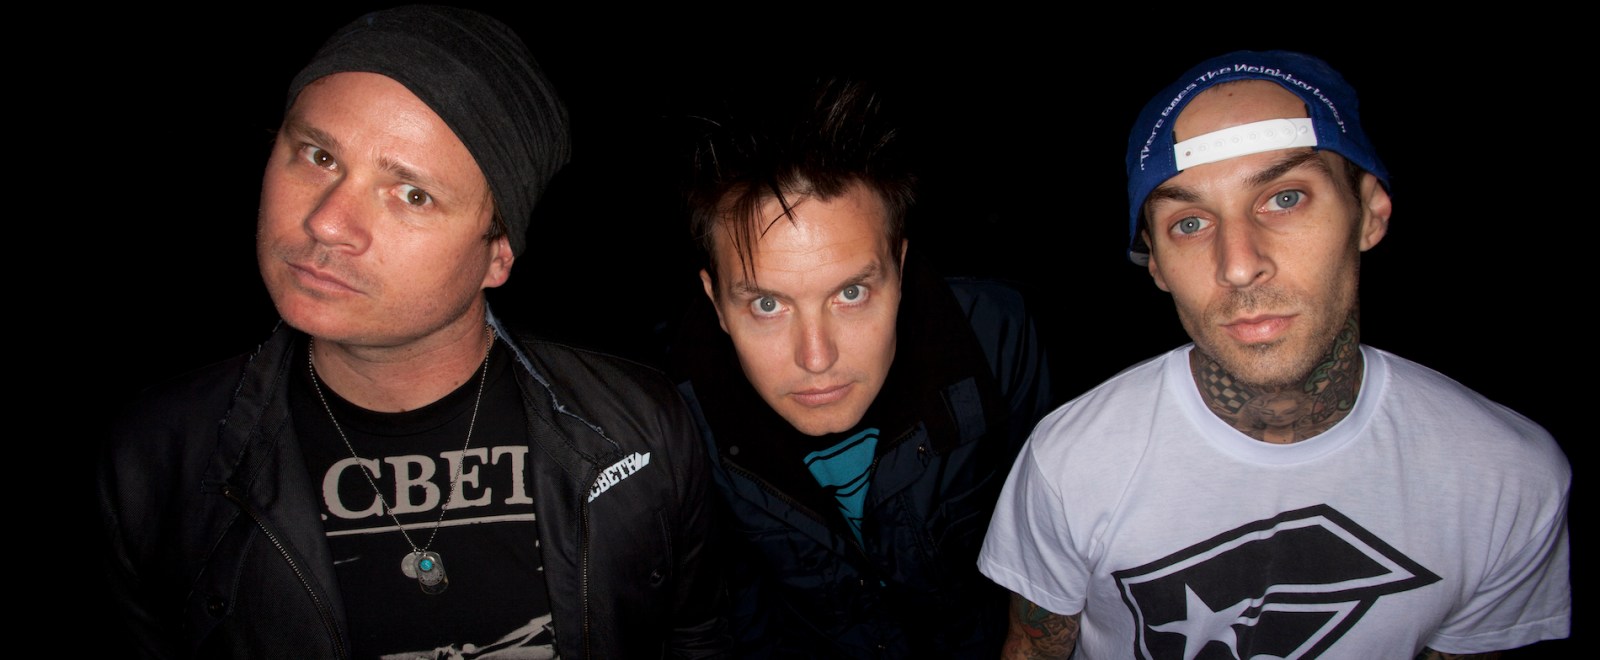 Blink-182 reunite for world tour: Tom DeLonge rejoins Travis